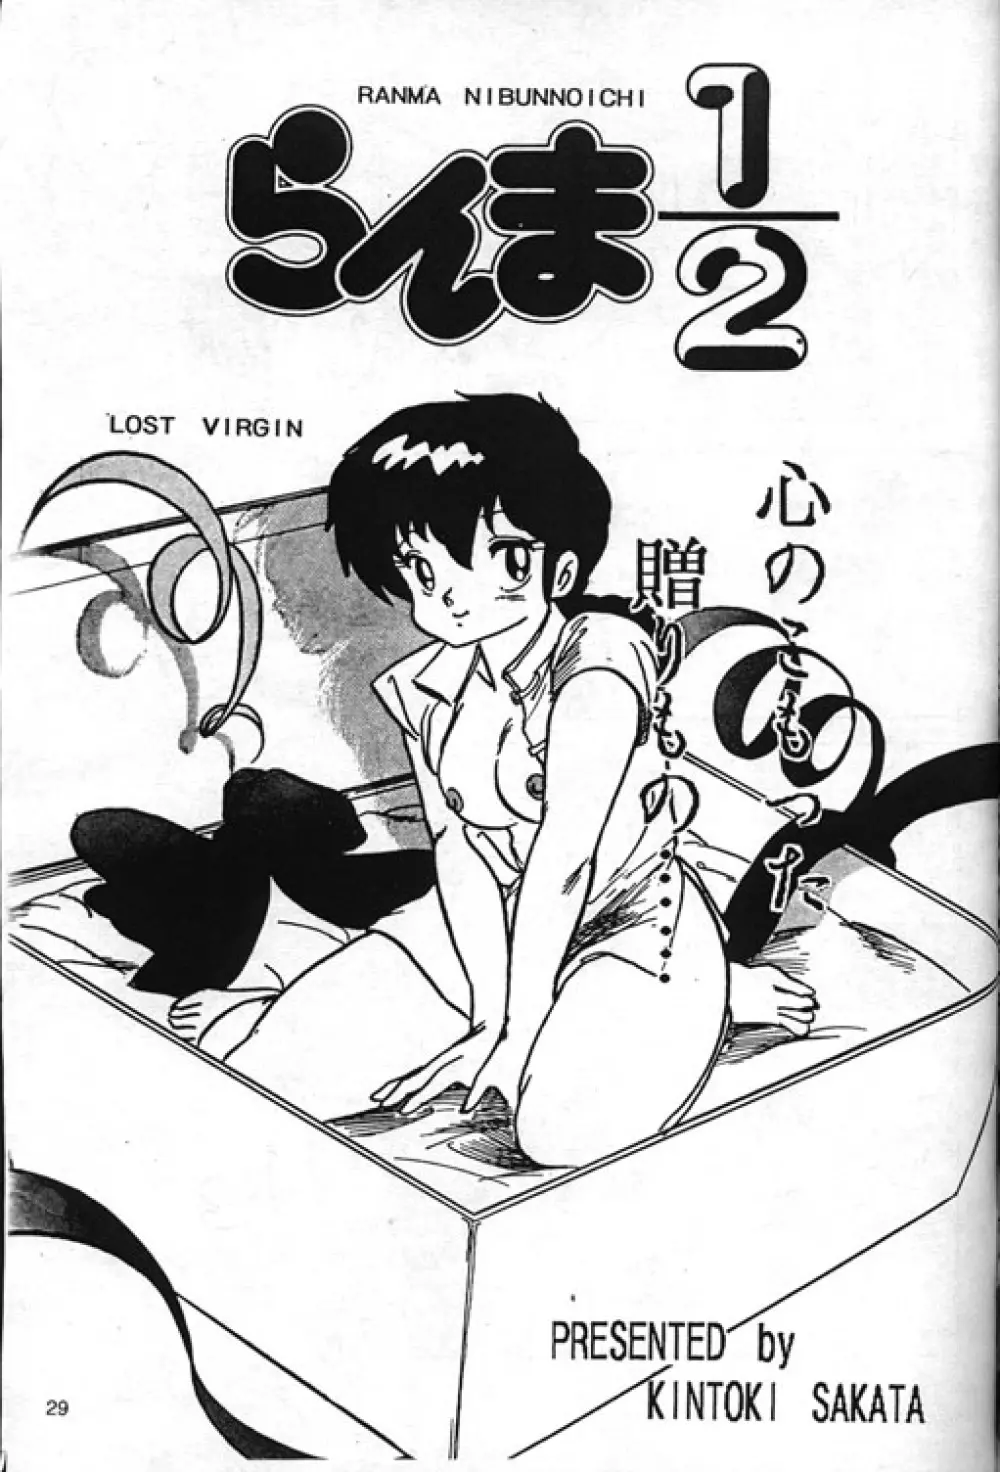 [Kintoki Sakata] Ranma Nibunnoichi - Esse Orange - Lost Virgin (Ranma 1/2) Page.1